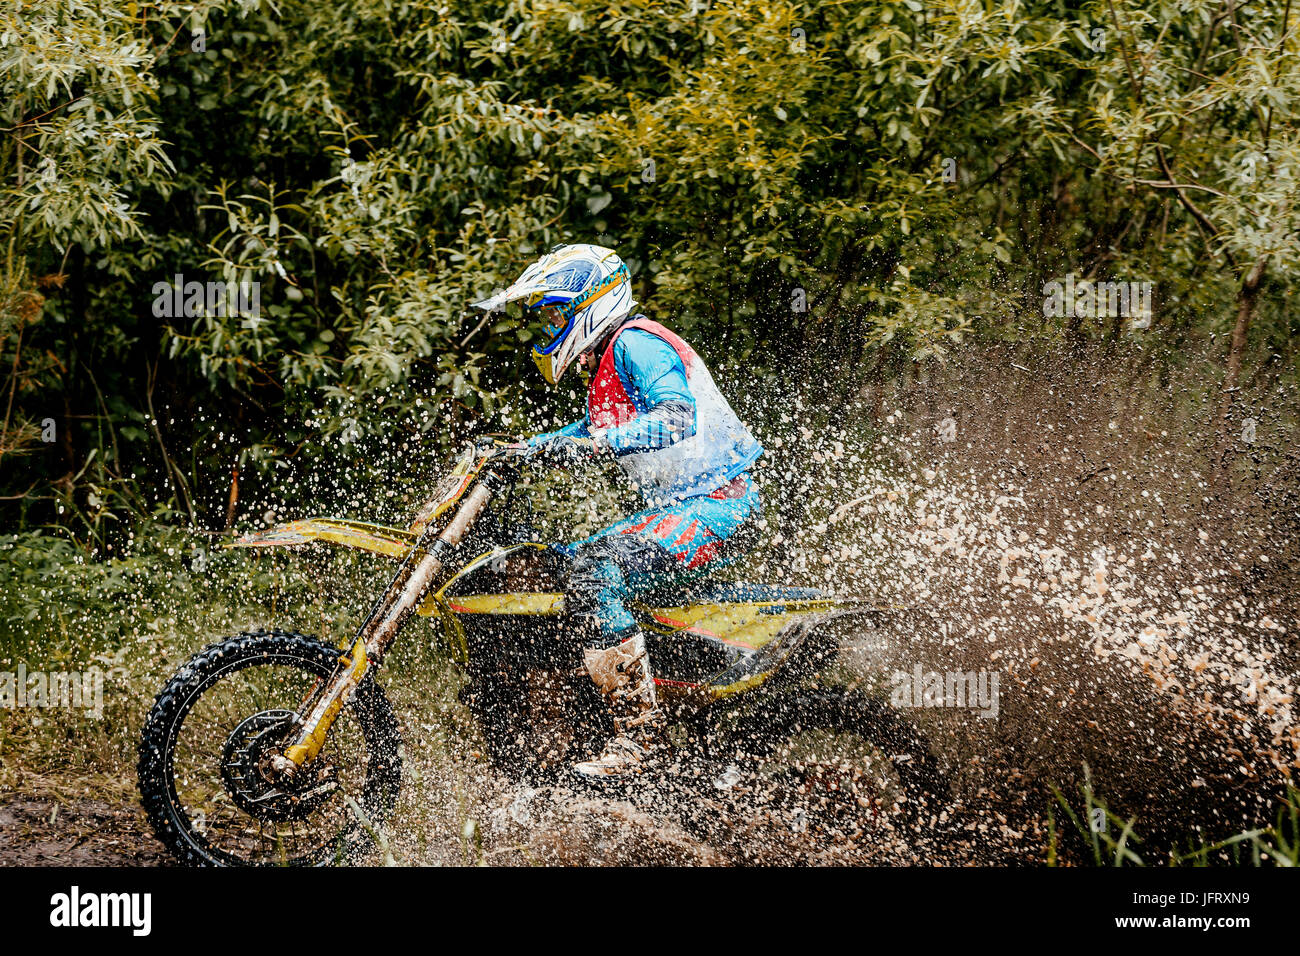 Motociclista attraversa la pozzanghera schizzi di acqua e sporcizia durante l'Ural Cup di Enduro Foto Stock